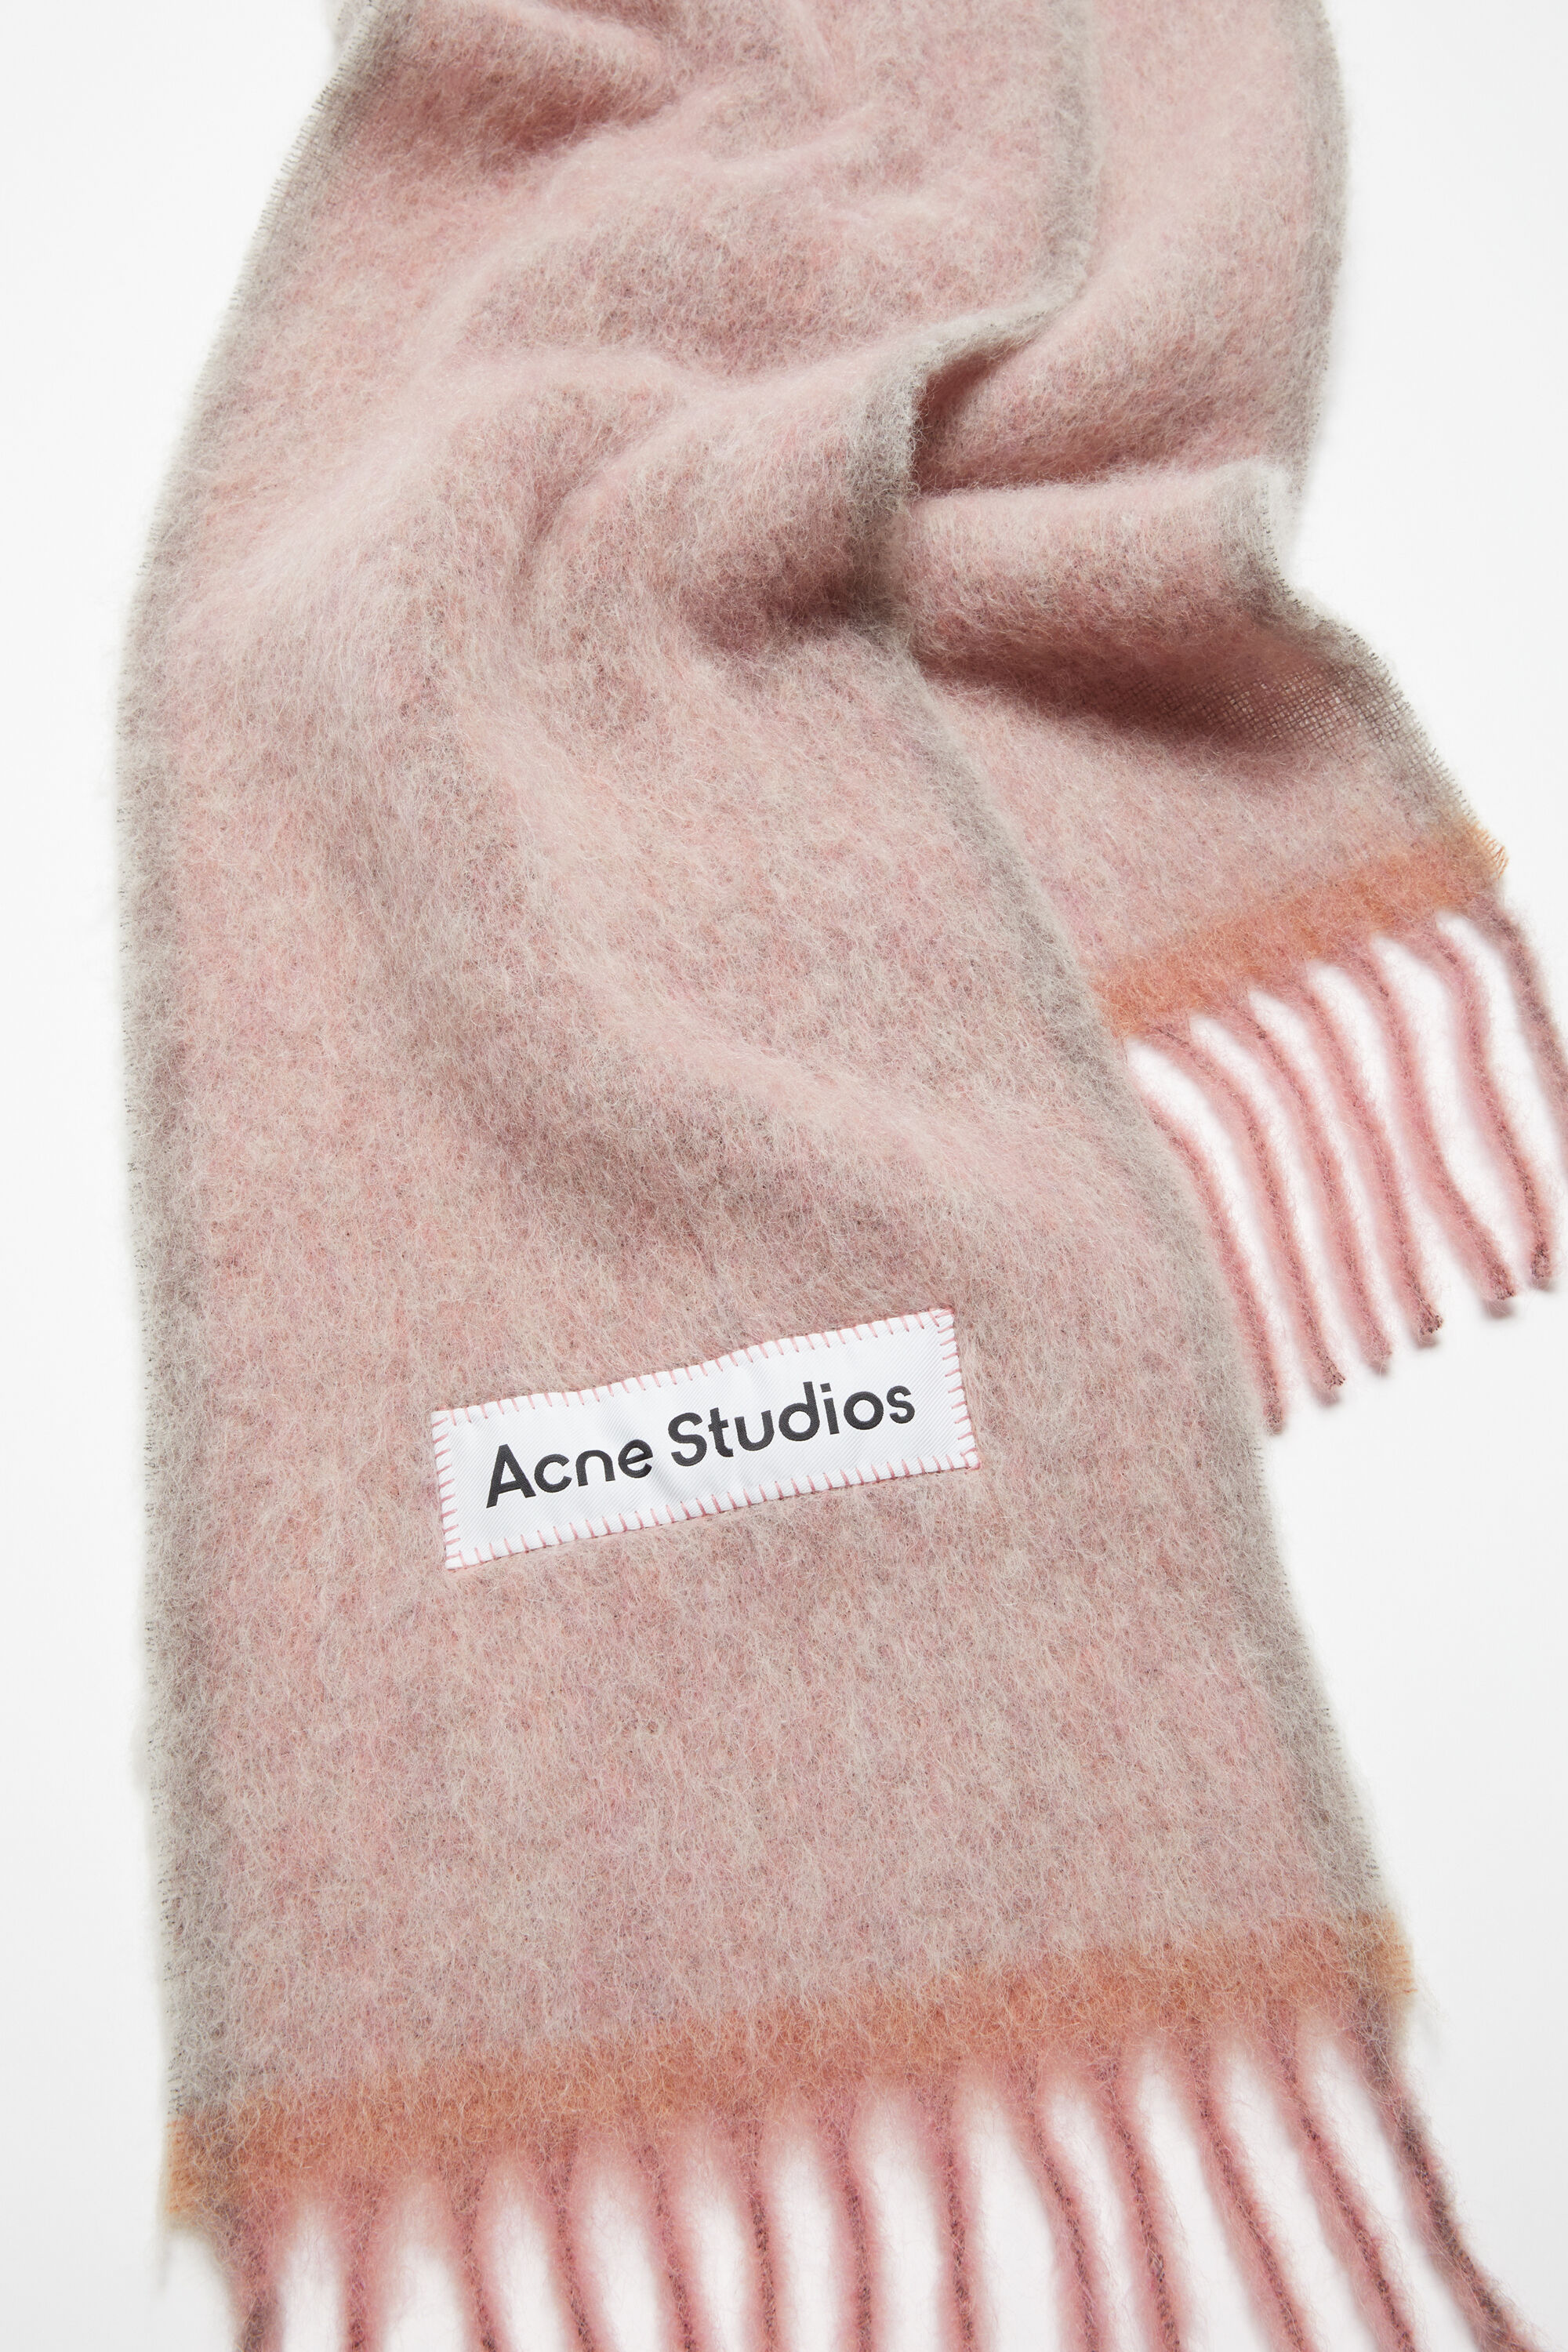 Acne Studios モヘアスカーフ取れやすくても問題なければ